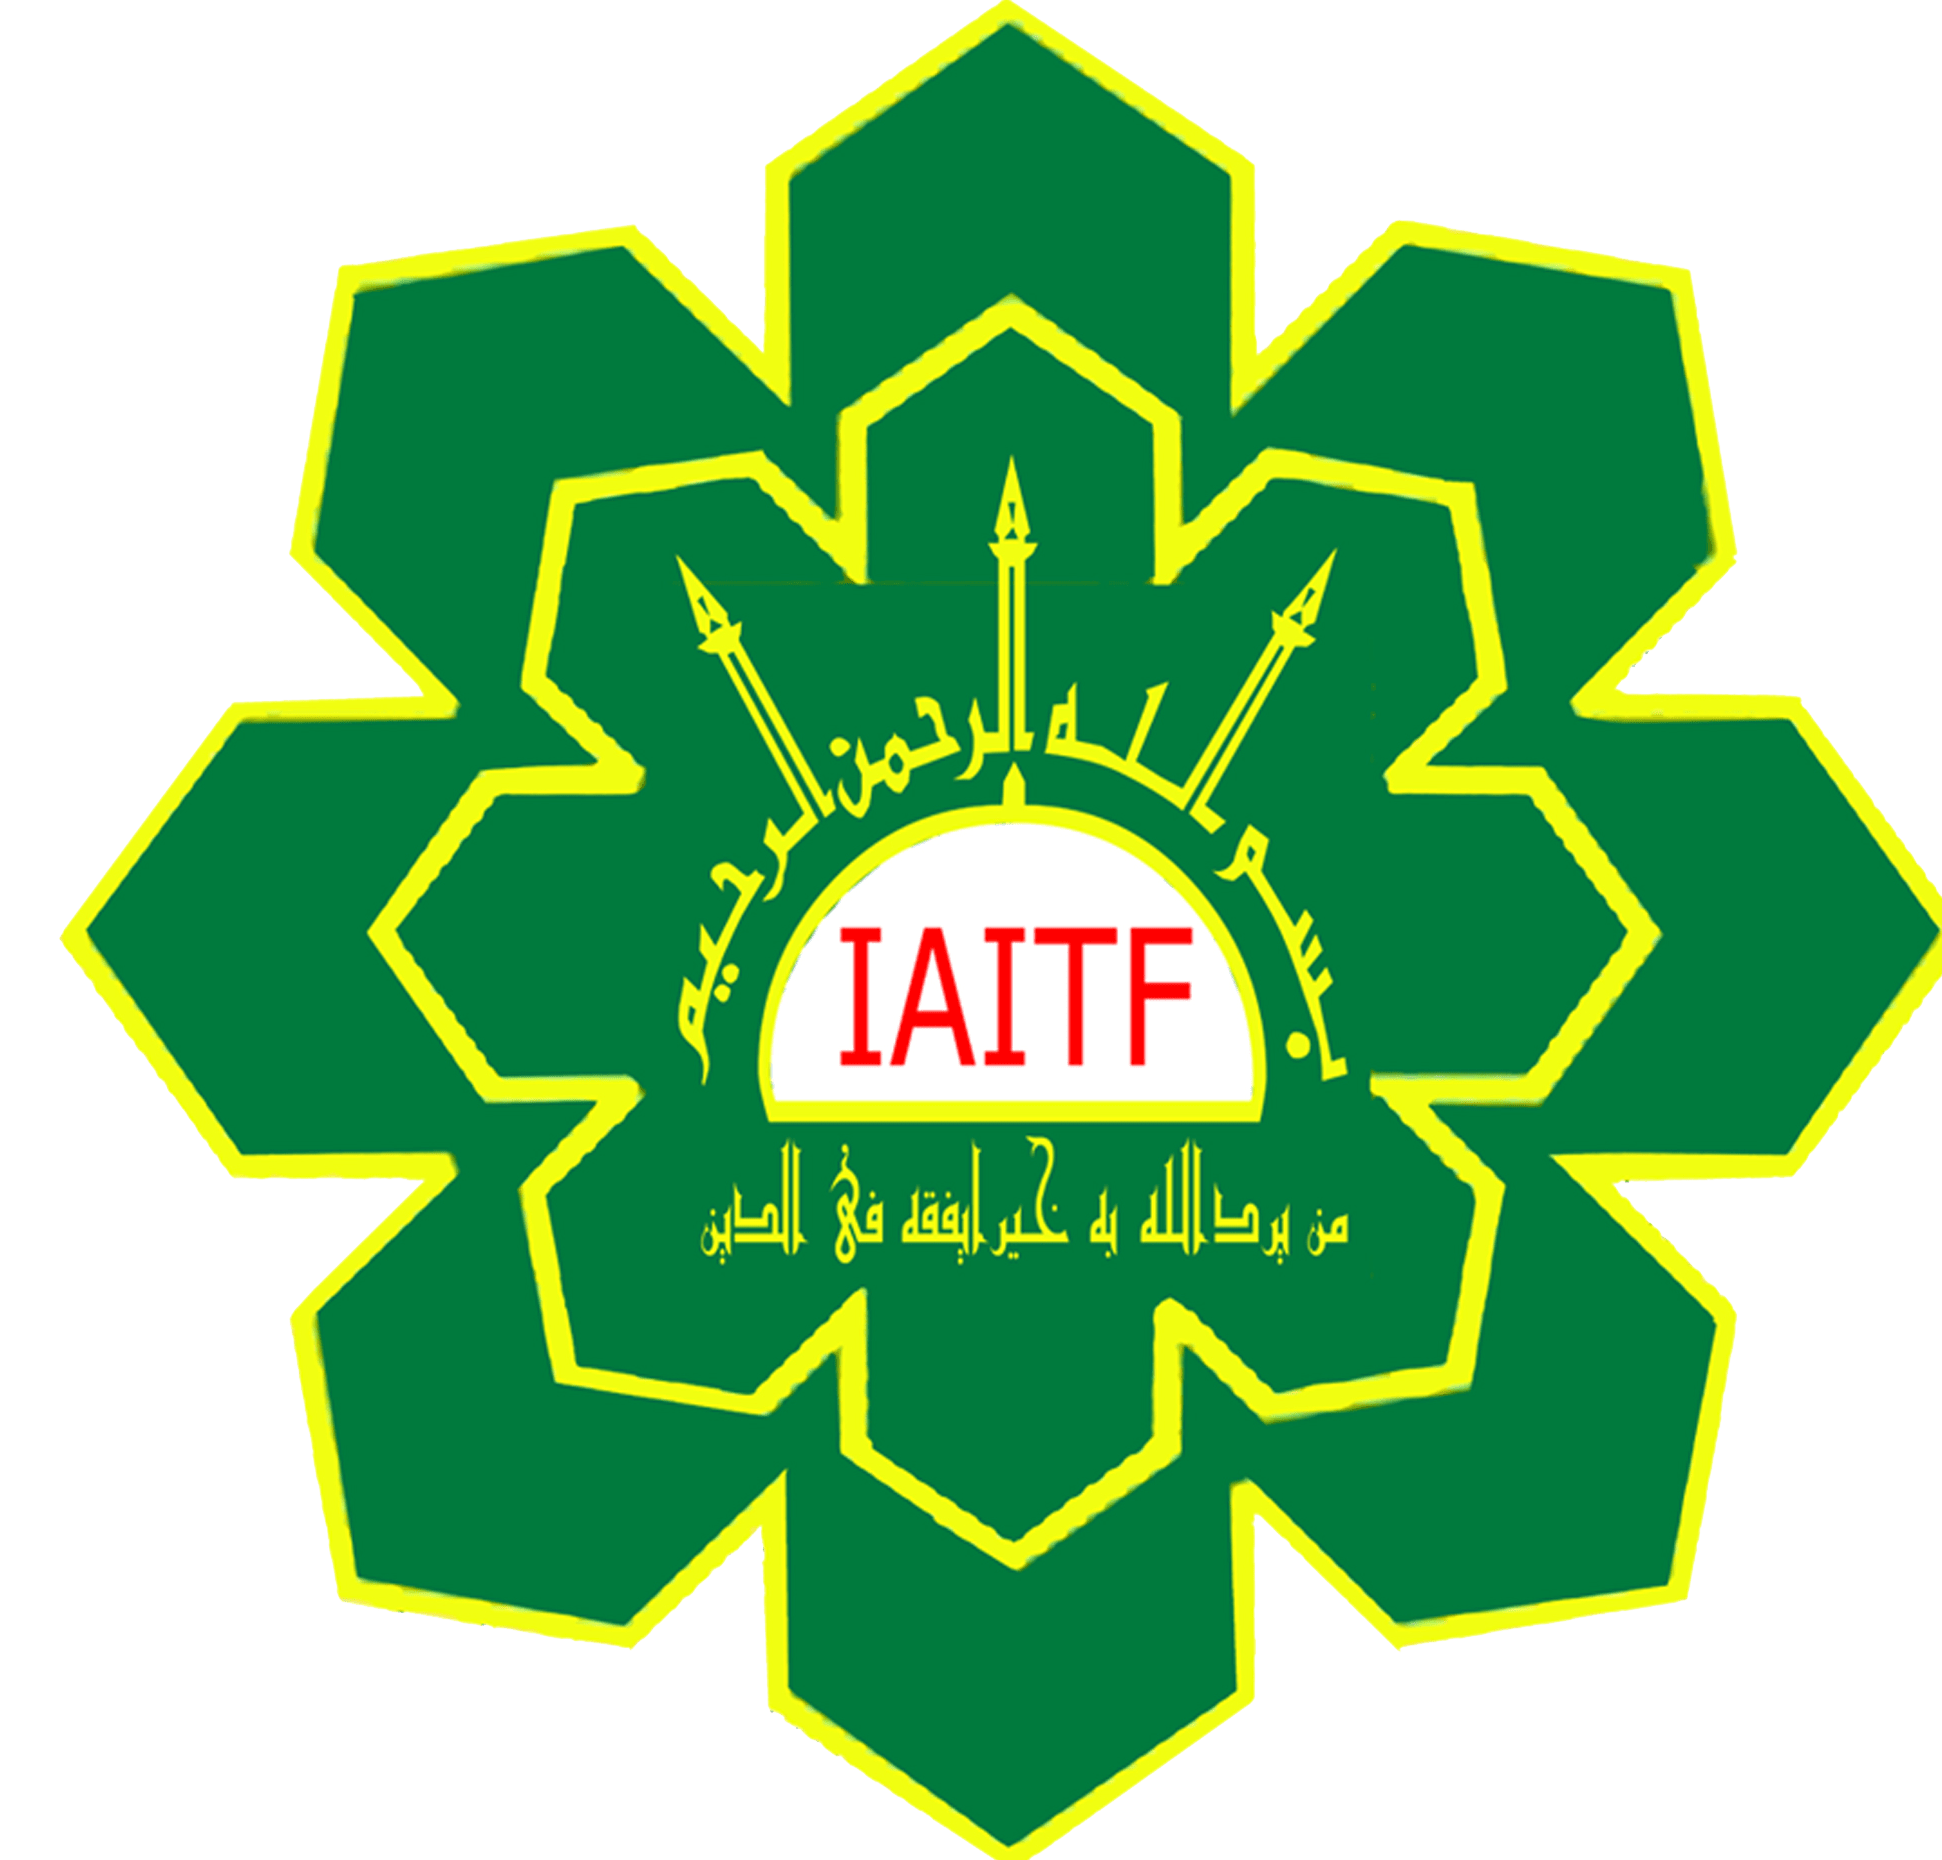 Institut Agama Islam Tafaqquh Fiddin Dumai